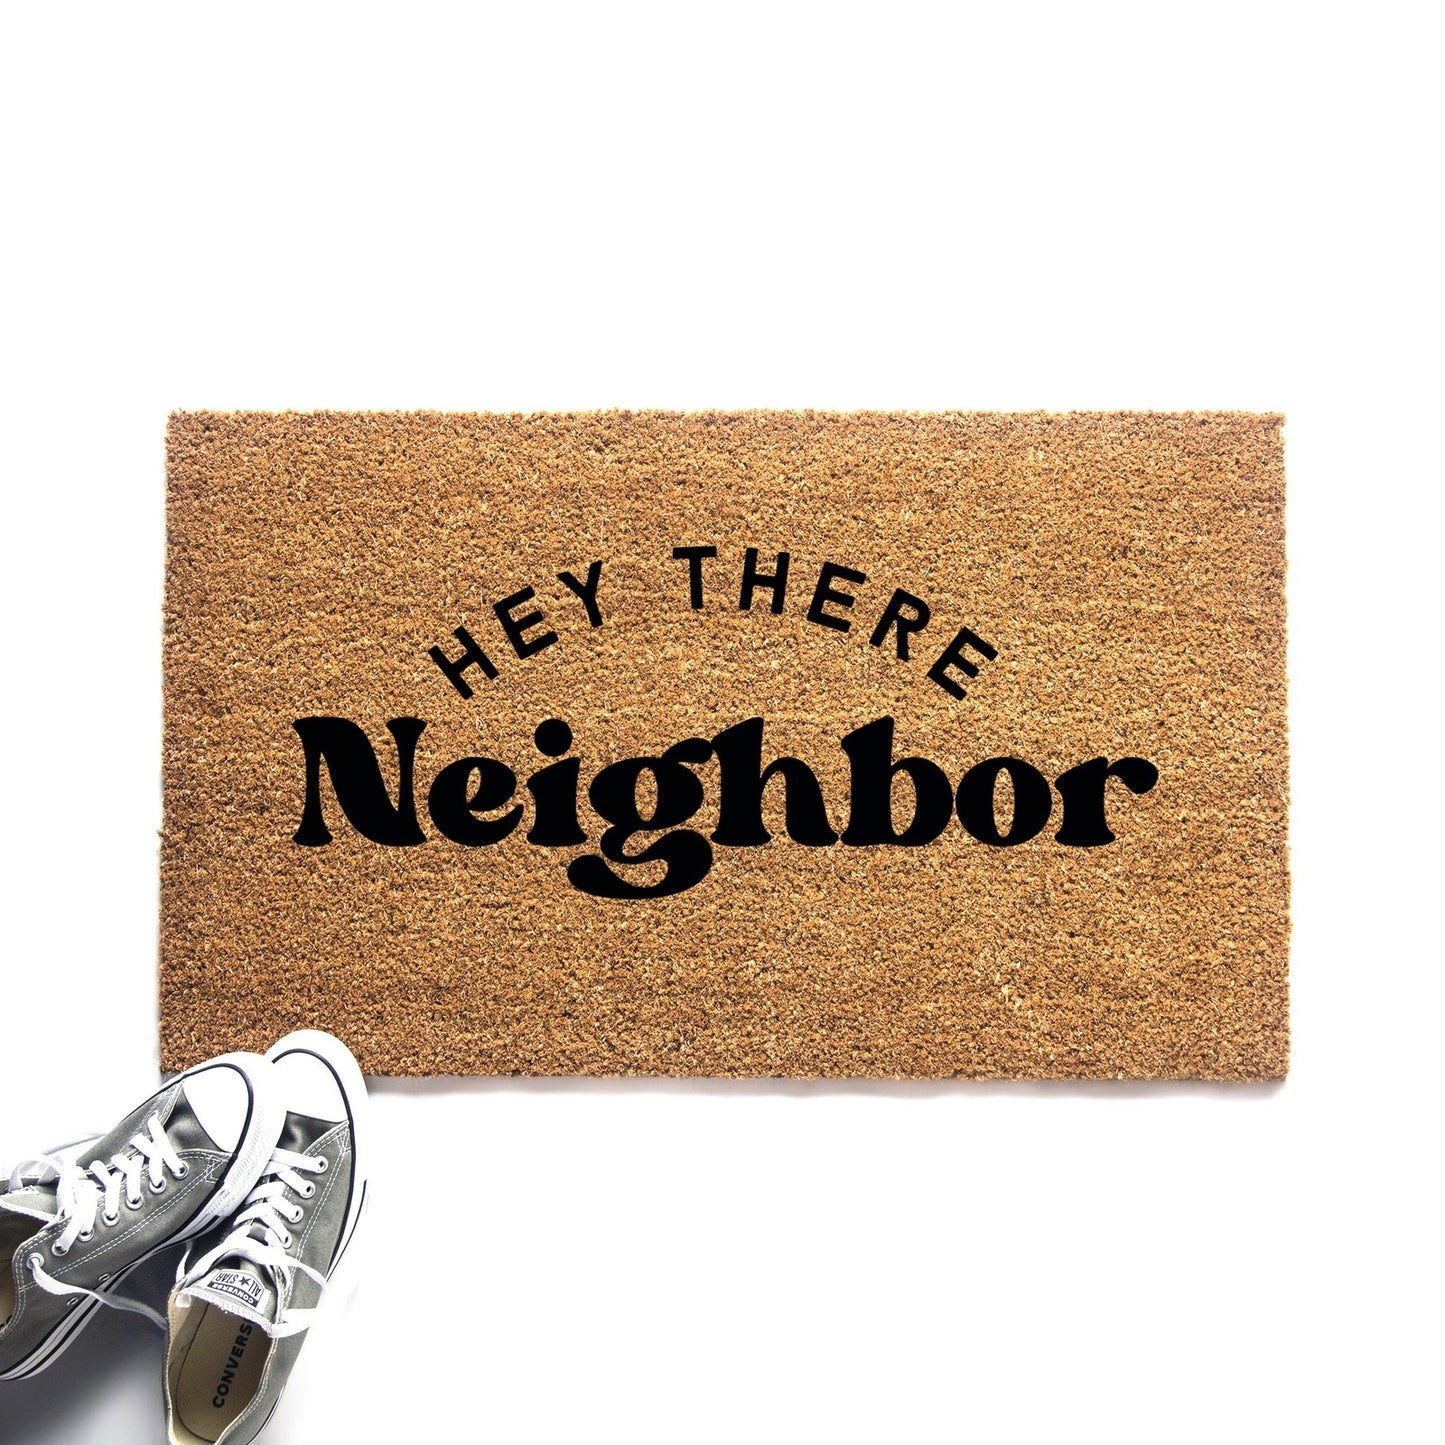 Hey There Neighbor Doormat